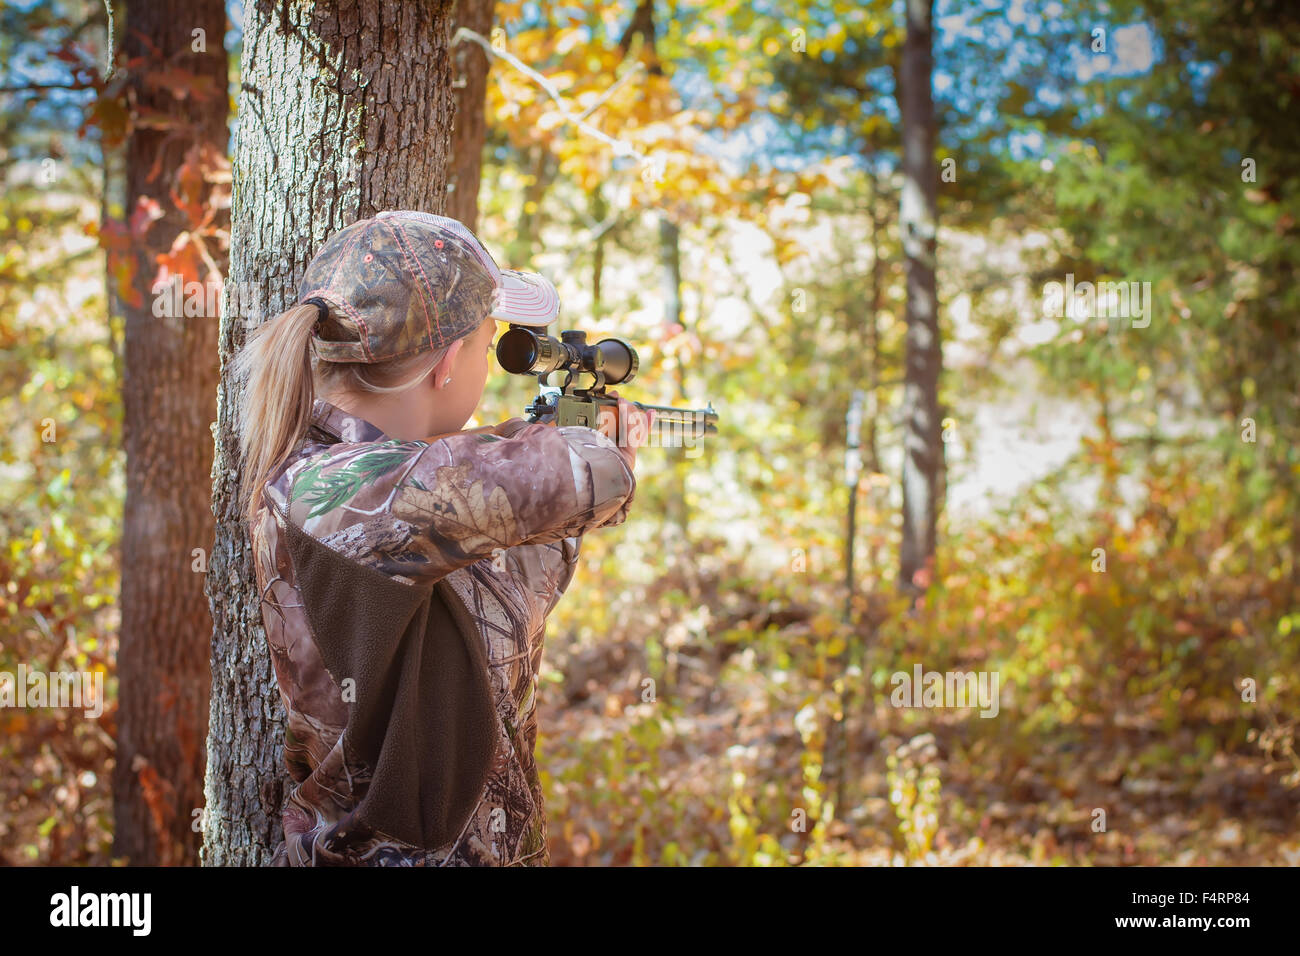 Jeune femme visant une carabine dans une zone boisée portant camouflage. Banque D'Images